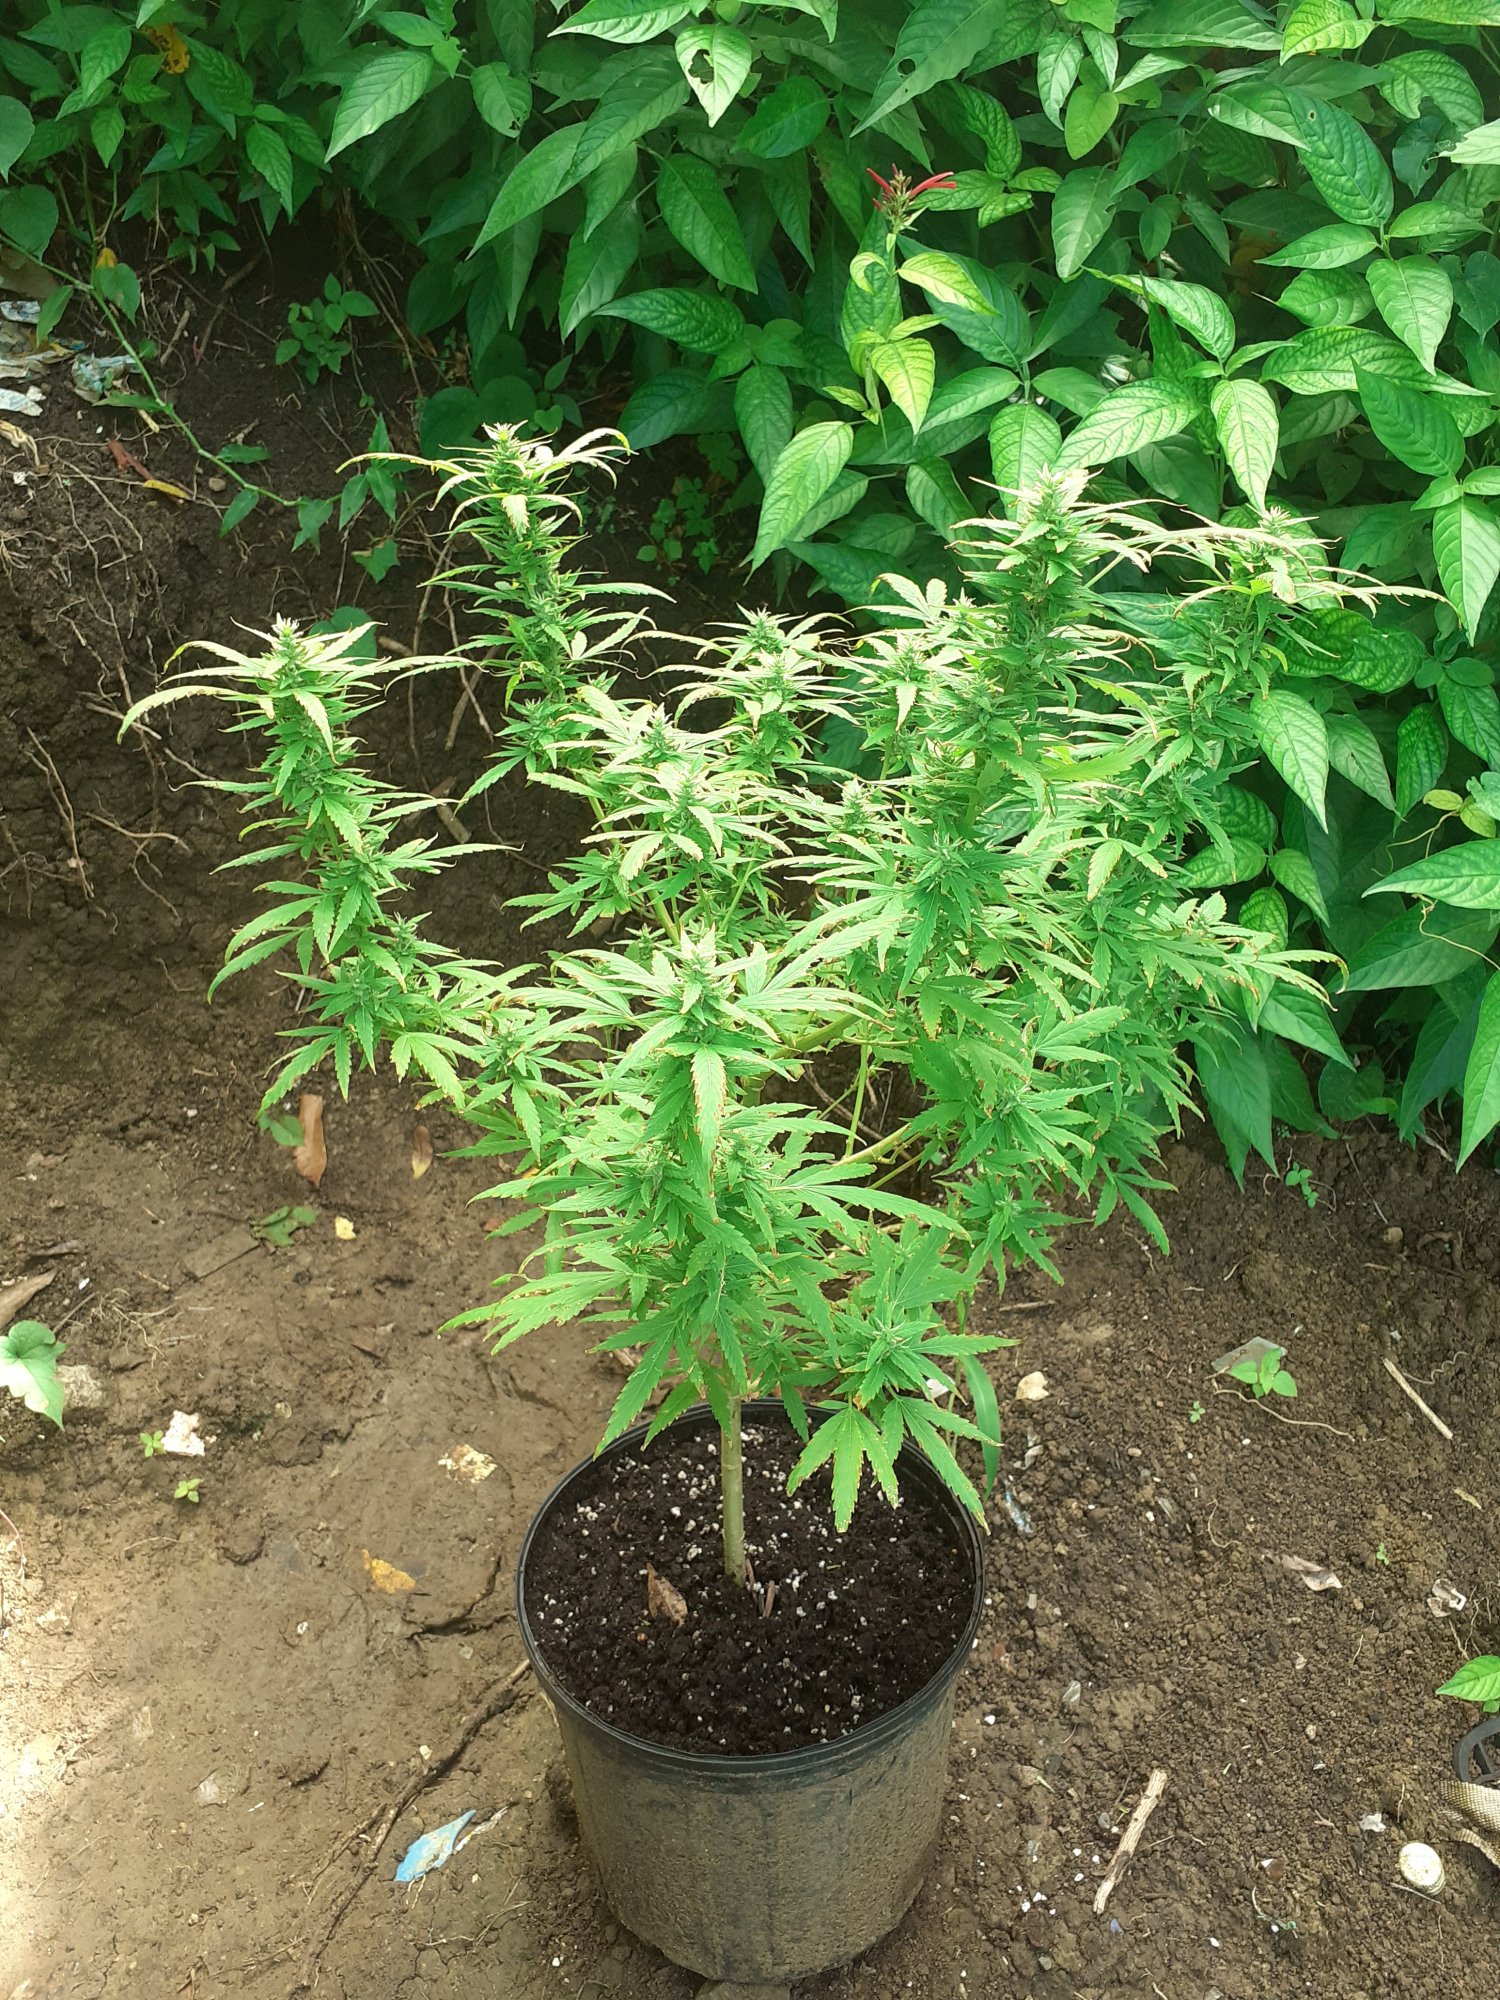 My first time growing marijuana 2